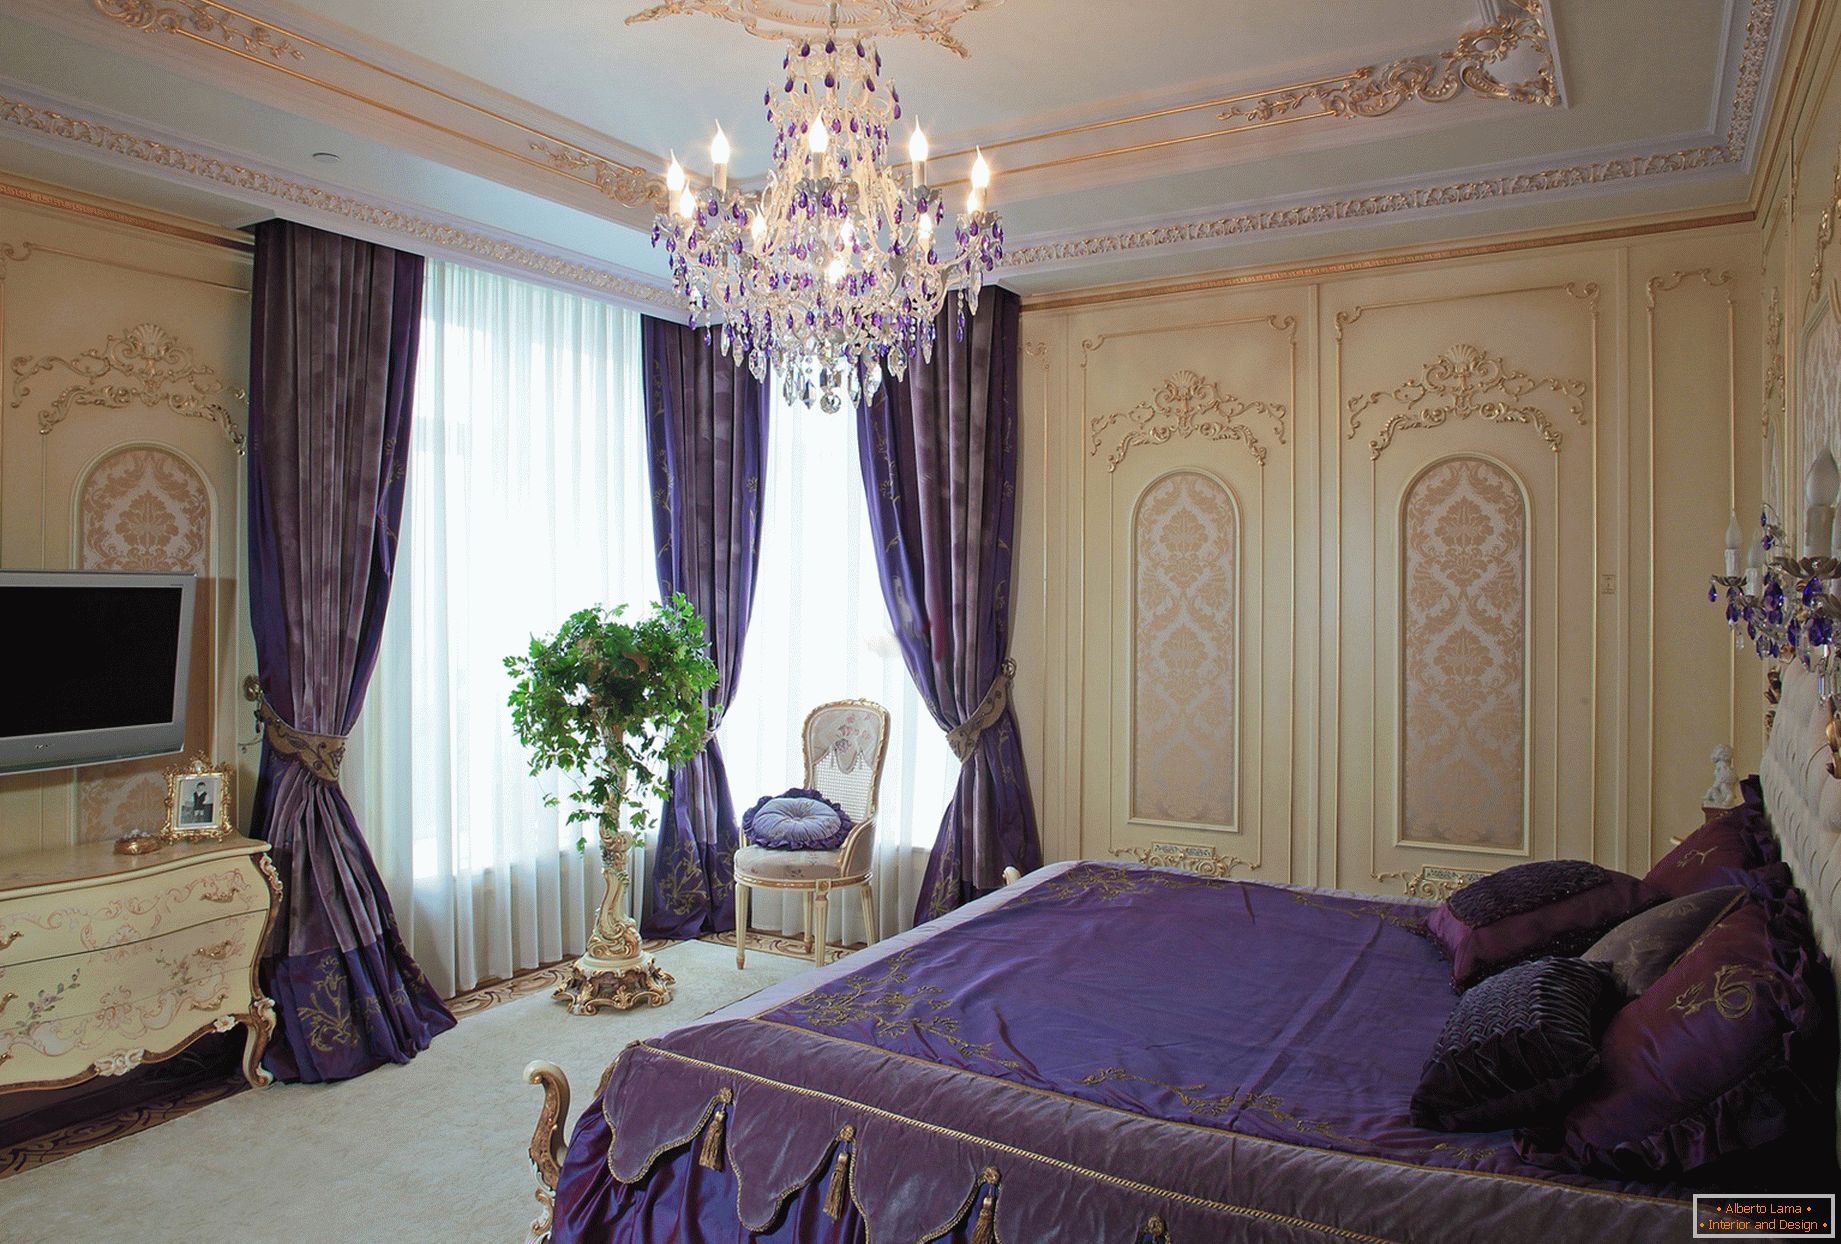 Elegante habitación en estilo barroco. Un concepto de diseño sutil: las cortinas de color púrpura oscuro se combinan con la ropa de cama combinada en tono.